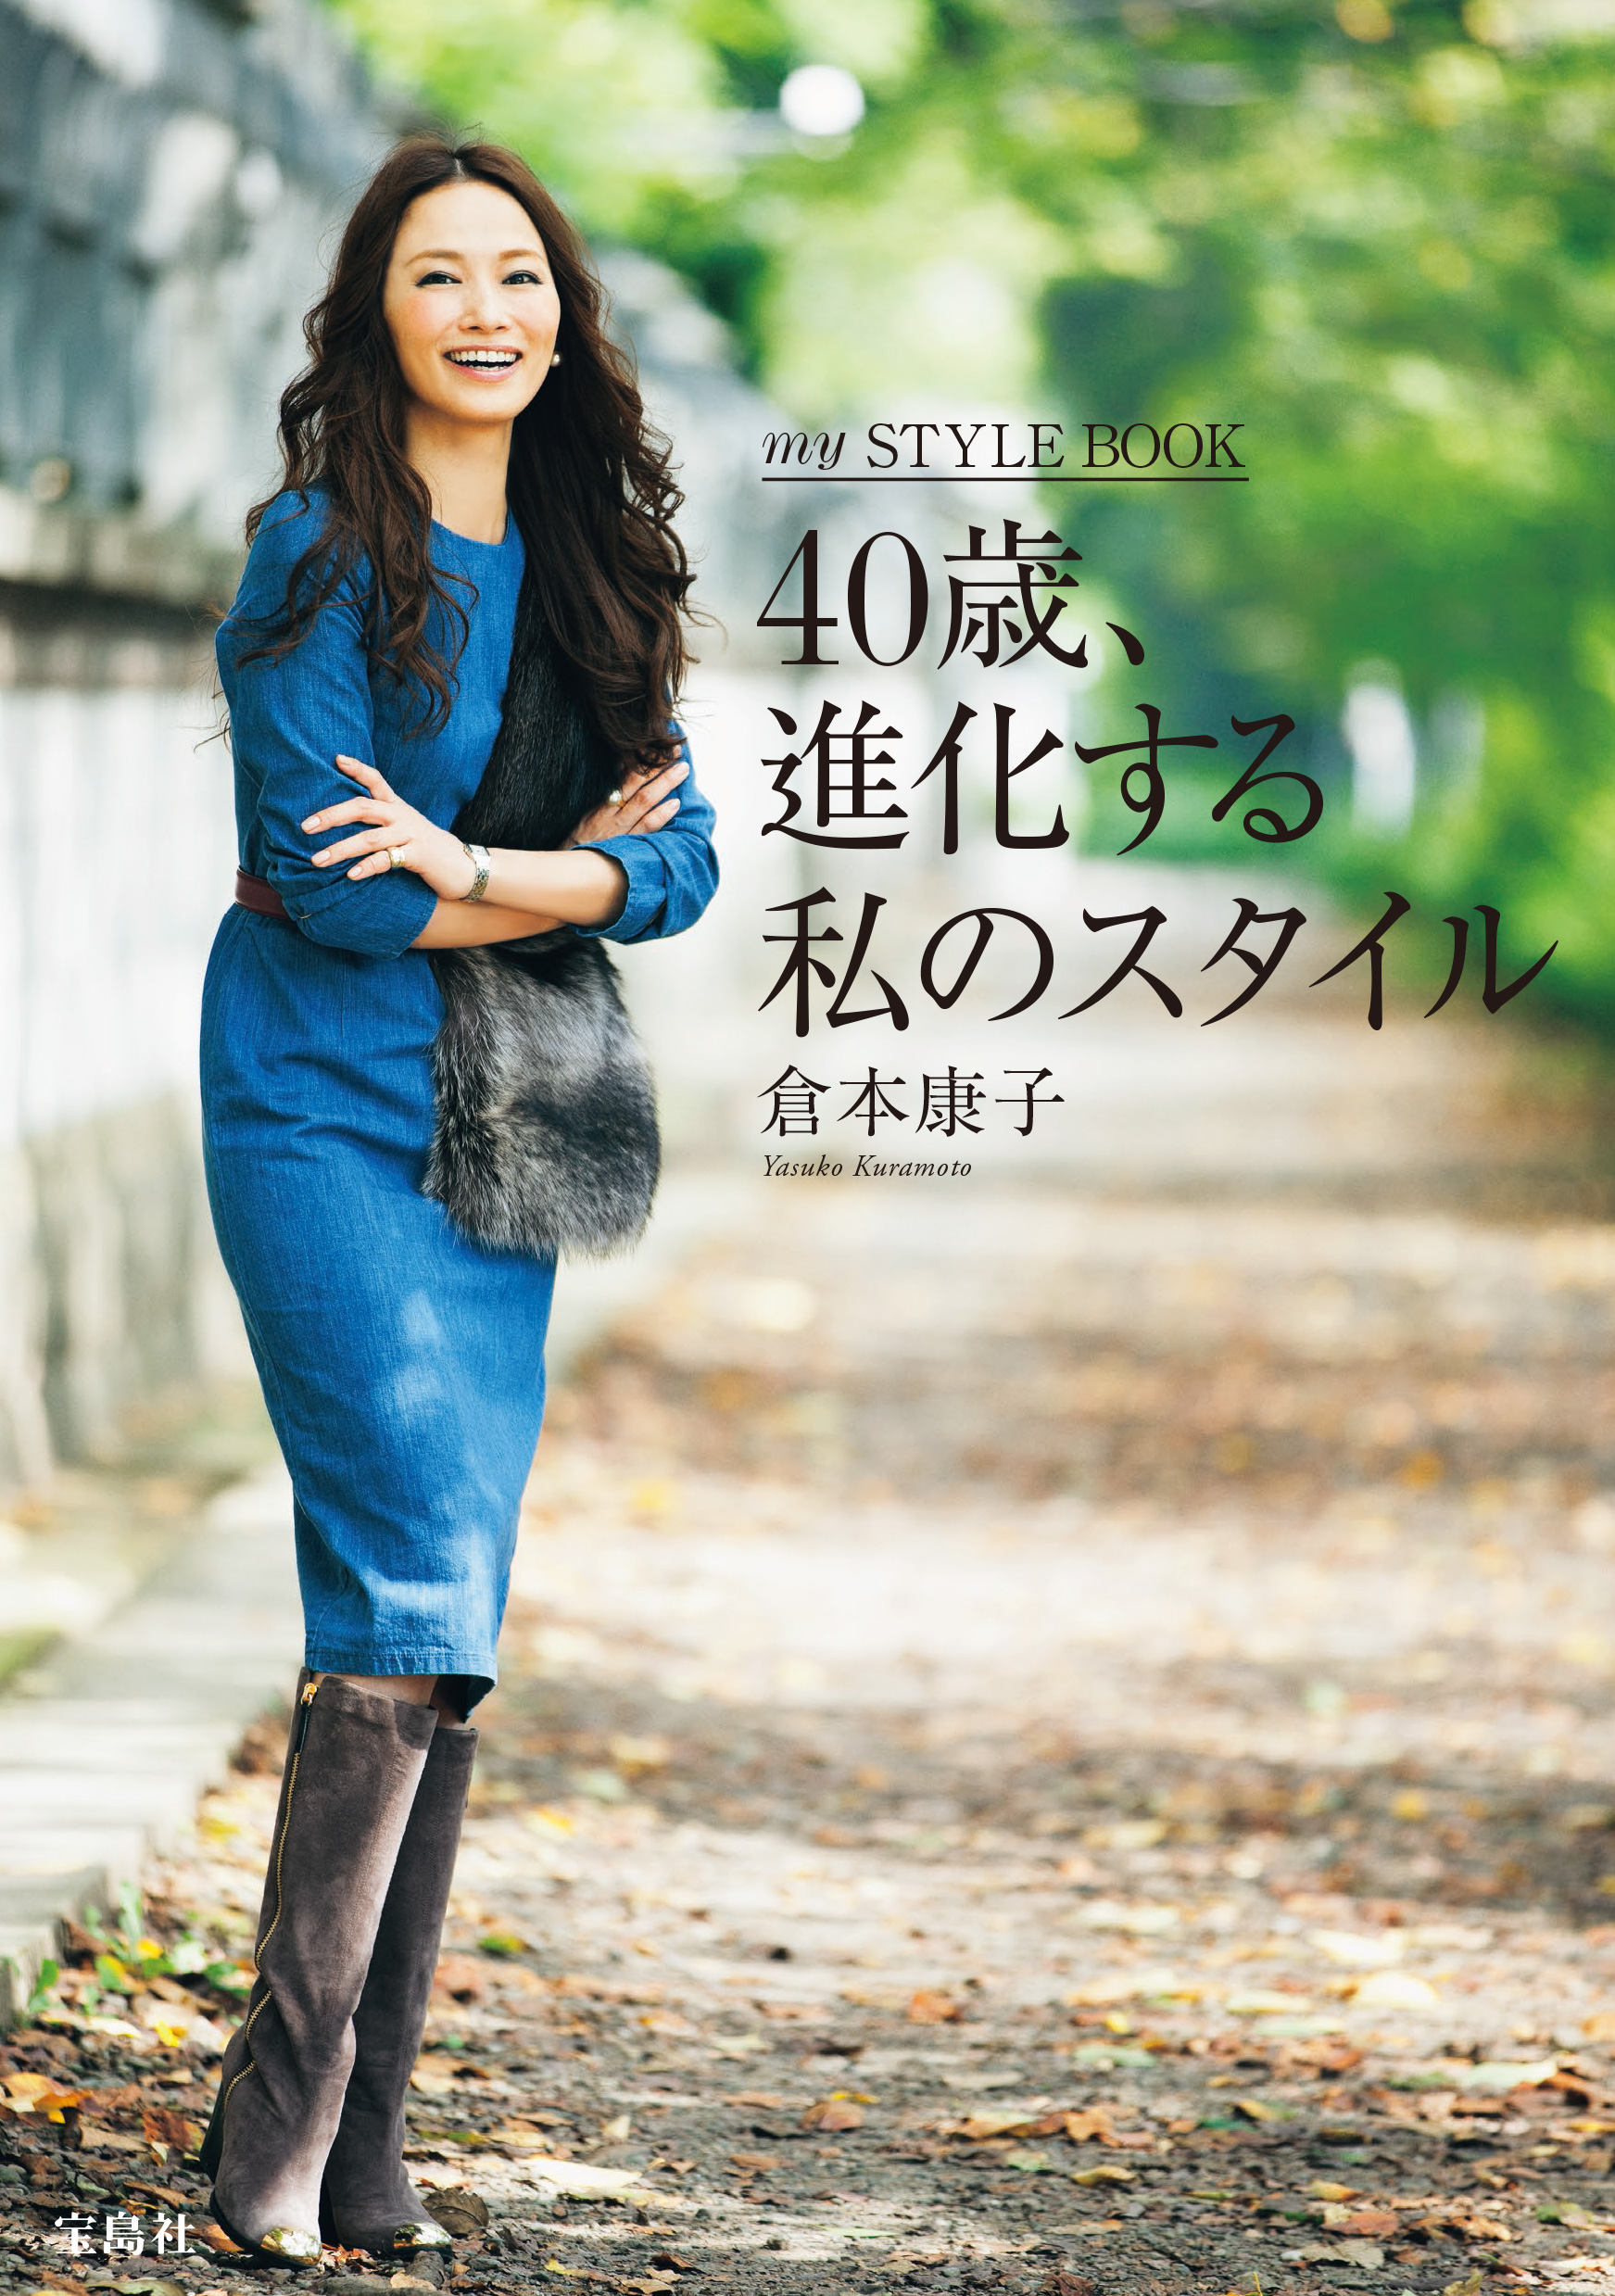 40歳 人気モデル倉本康子が提案する 素敵な40代になるためのヒント 株式会社 宝島社のプレスリリース